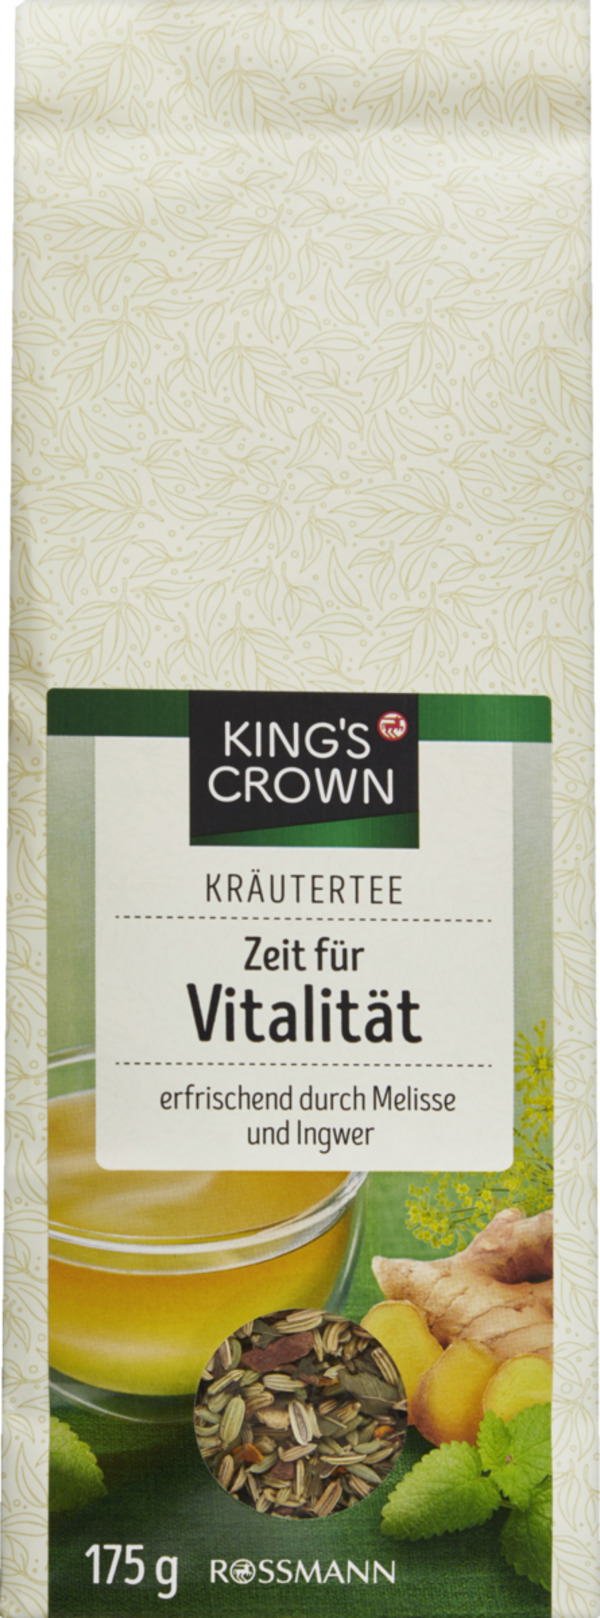 Bild 1 von KING'S CROWN Kräutertee Zeit für Vitalität